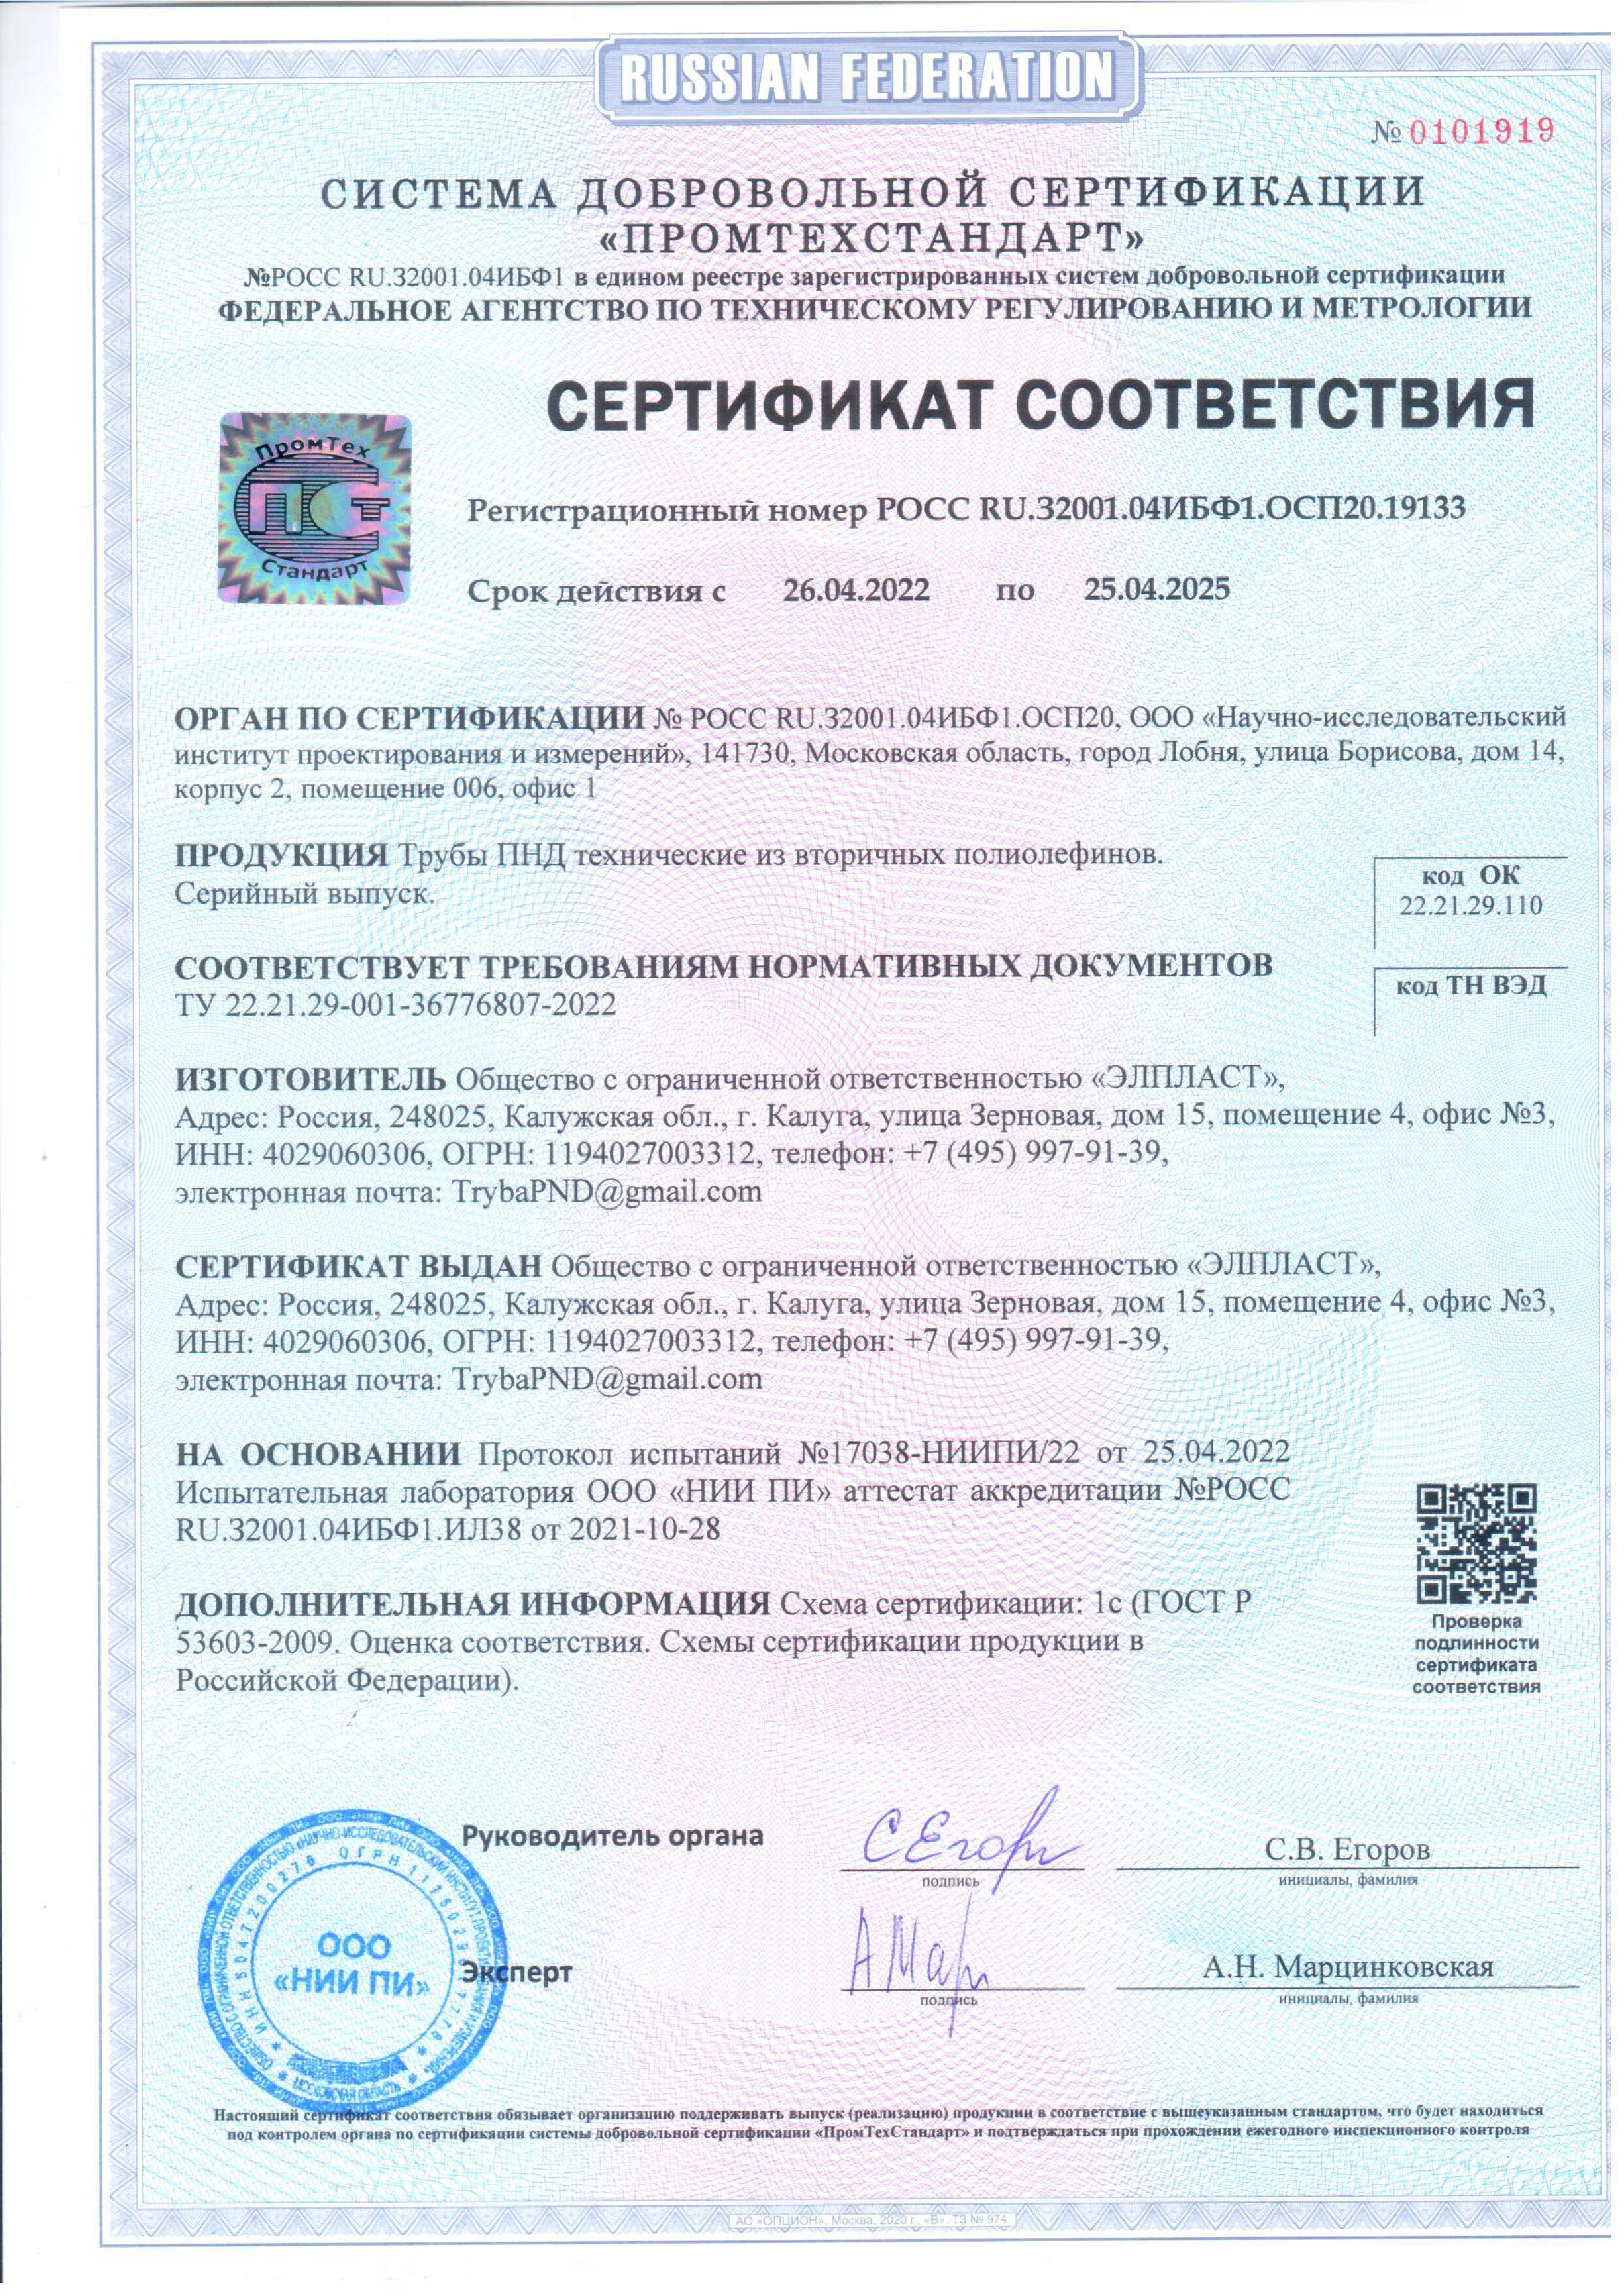 Сертификат соответствия труб ПНД технических выдан ООО Элпласт